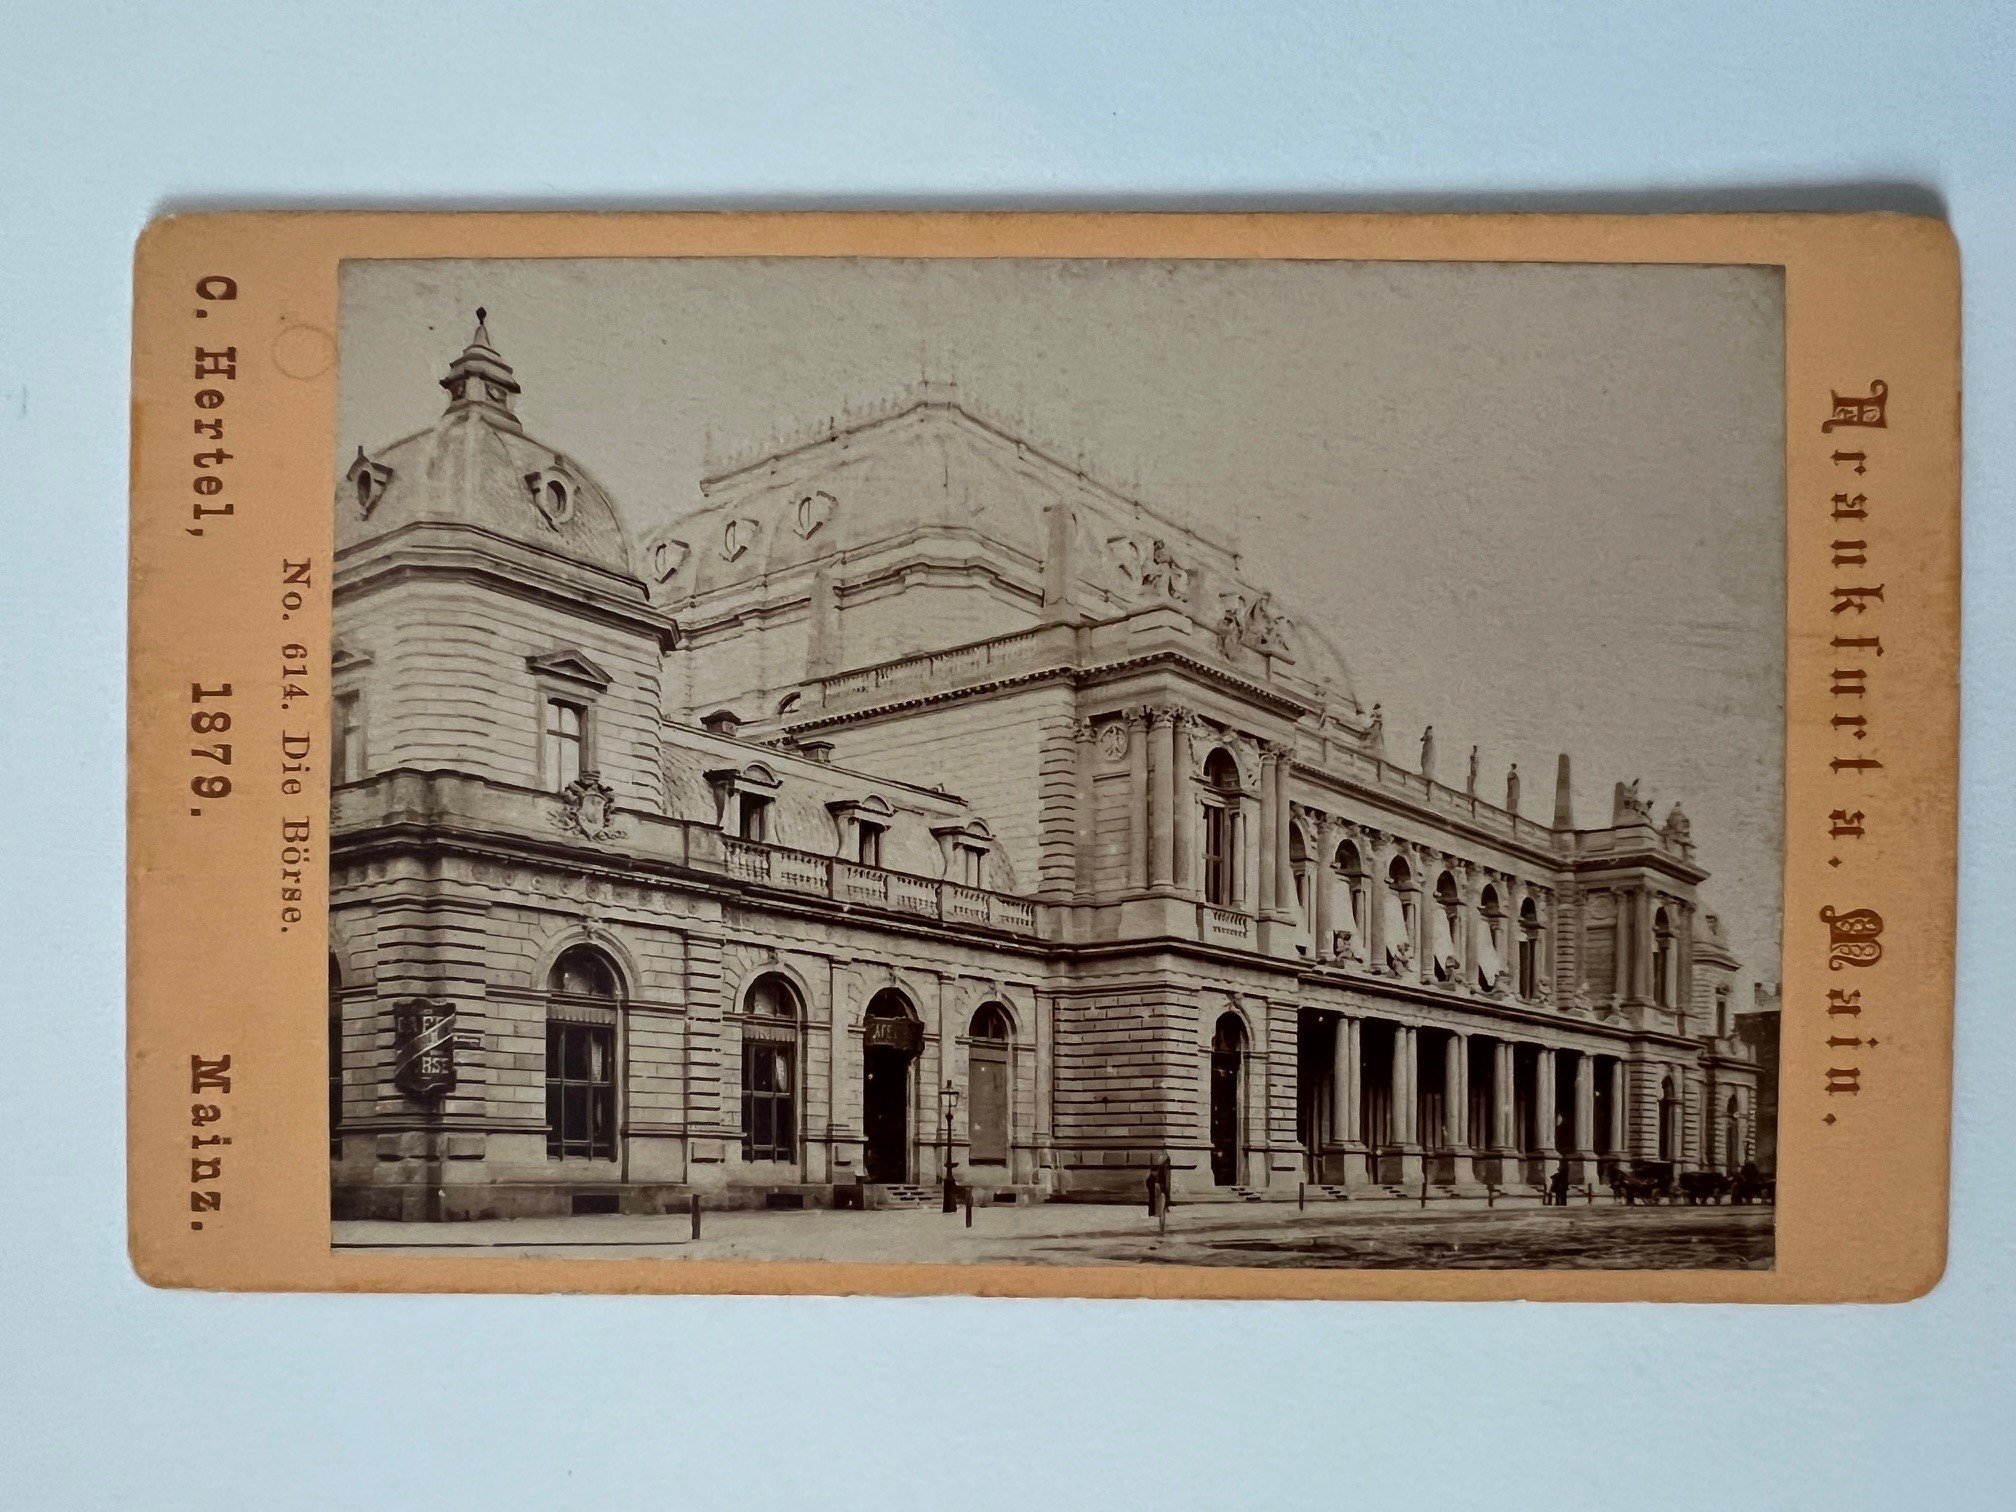 CdV, Carl Hertel, Frankfurt, Die Börse, 1879. (Taunus-Rhein-Main - Regionalgeschichtliche Sammlung Dr. Stefan Naas CC BY-NC-SA)